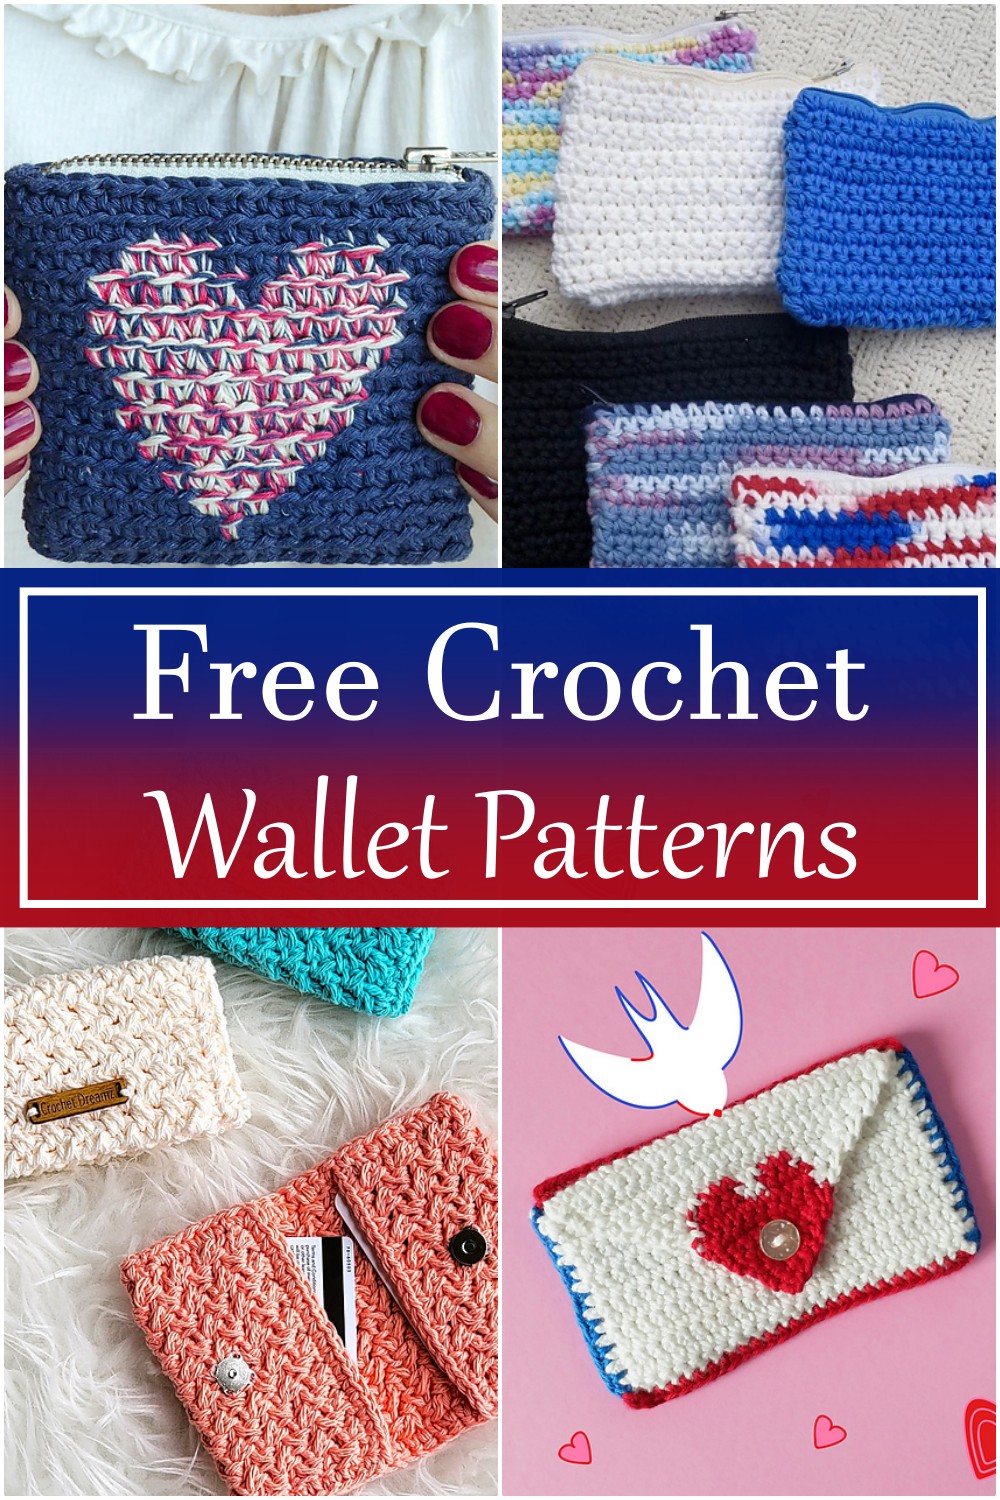 10 Free Crochet Wallet Patterns